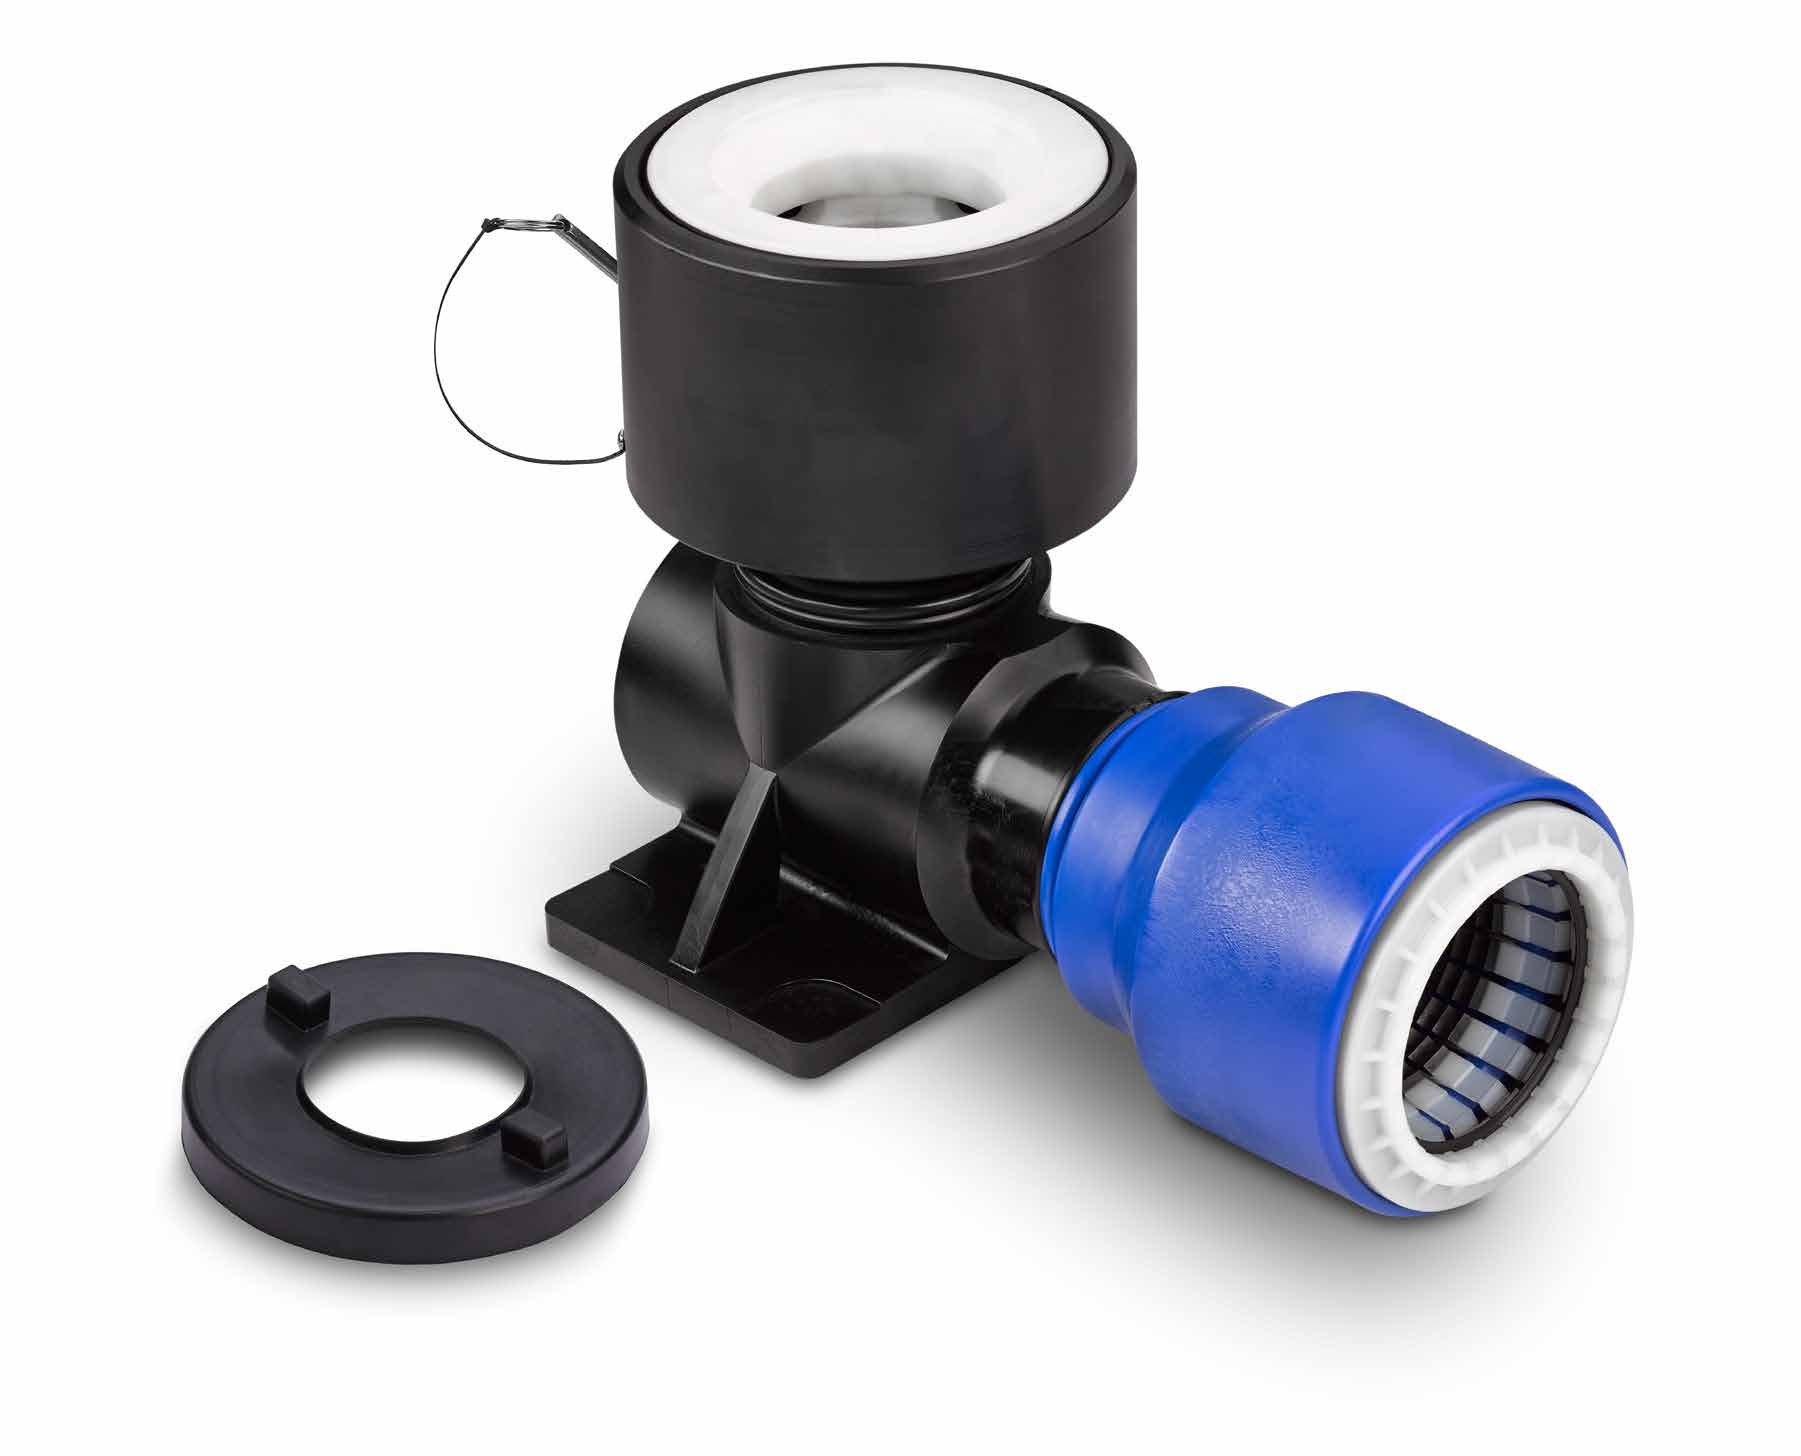 RG Fußbogen für BAIO Hydranten Adapter aus technischem Kunststoff für Hydranten mit Bajonettspitzende mit verstärktem, auf die Last des Hydranten abgestimmter Aufnahme für Hydranten mit